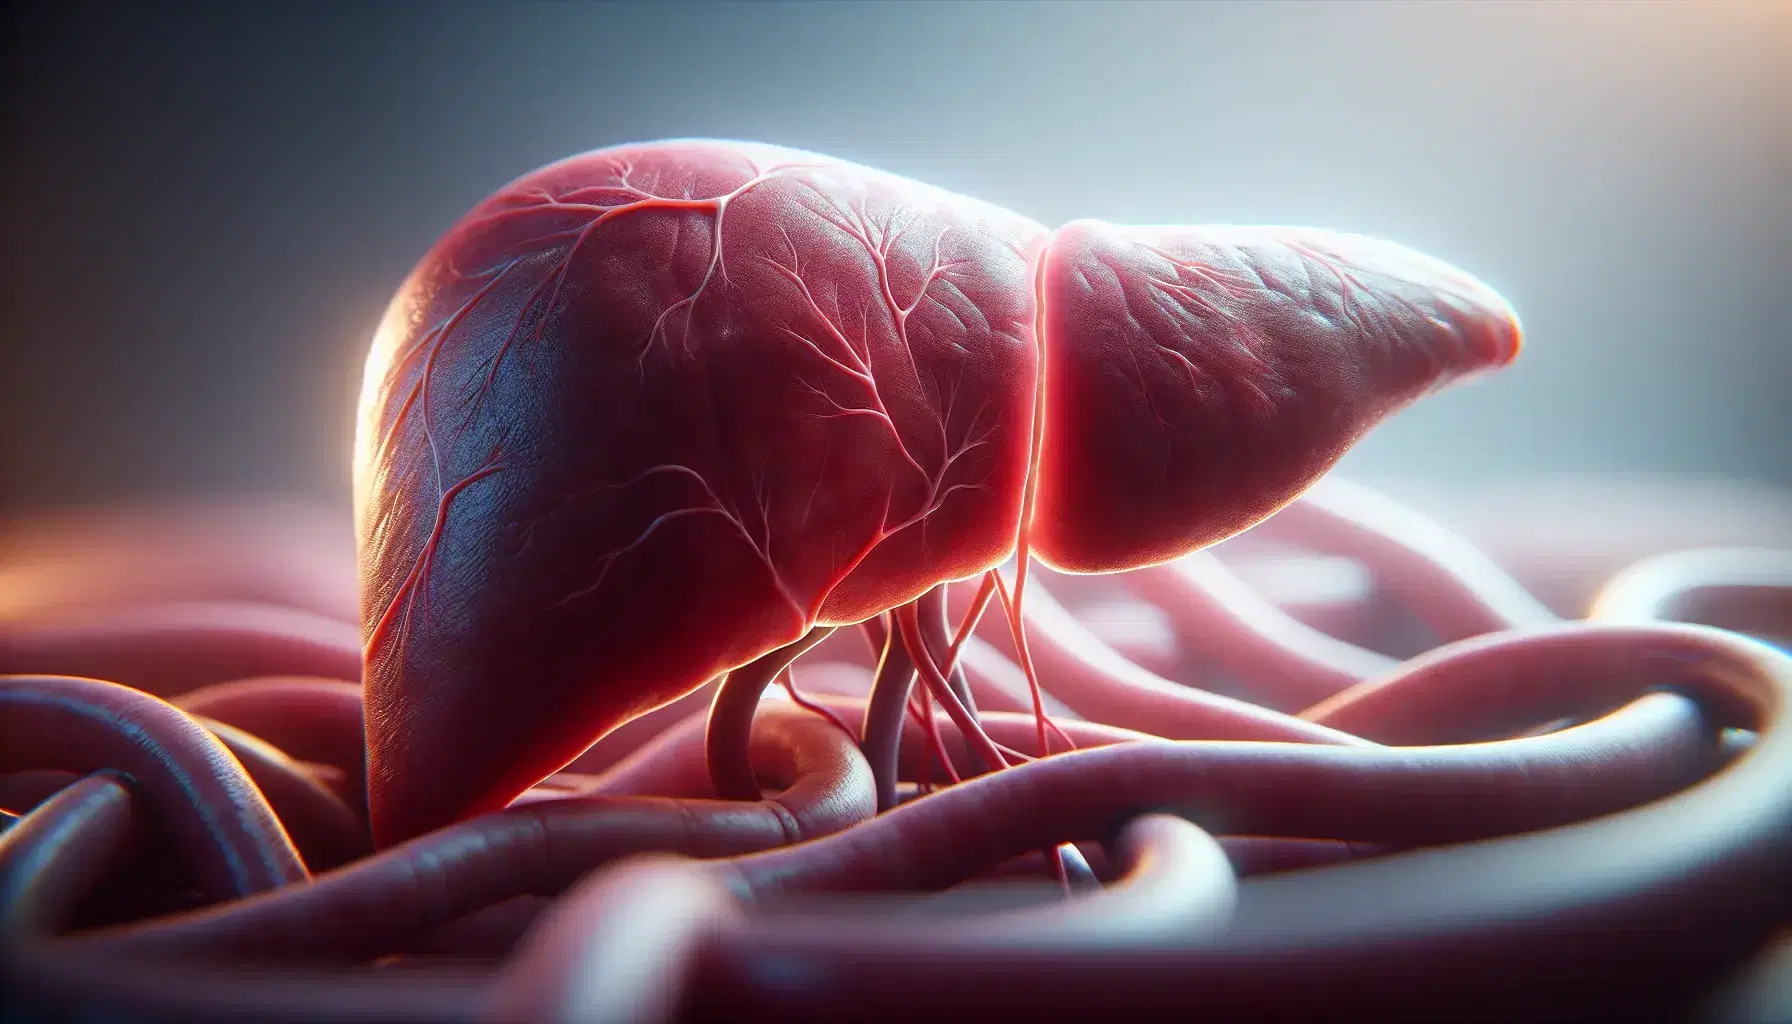 Vista cercana de un hígado humano sano con textura suave y color rojo-marrón homogéneo, iluminado sutilmente, mostrando sombras leves y estructura tubular borrosa al fondo.